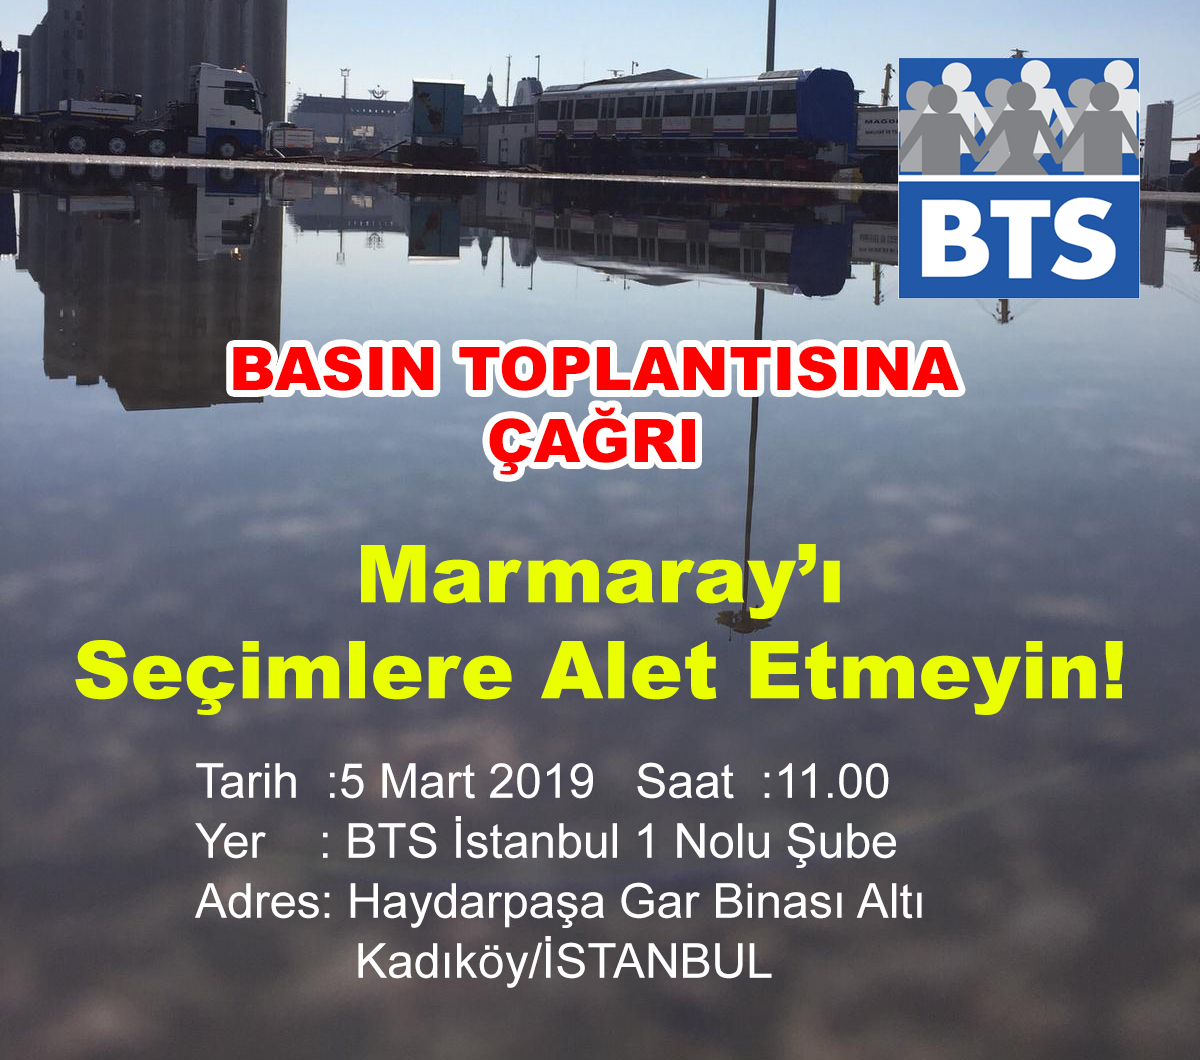 Sendikamızdan Basın Toplantısına Çağrı; Marmaray’ı Seçimlere Alet Etmeyin!